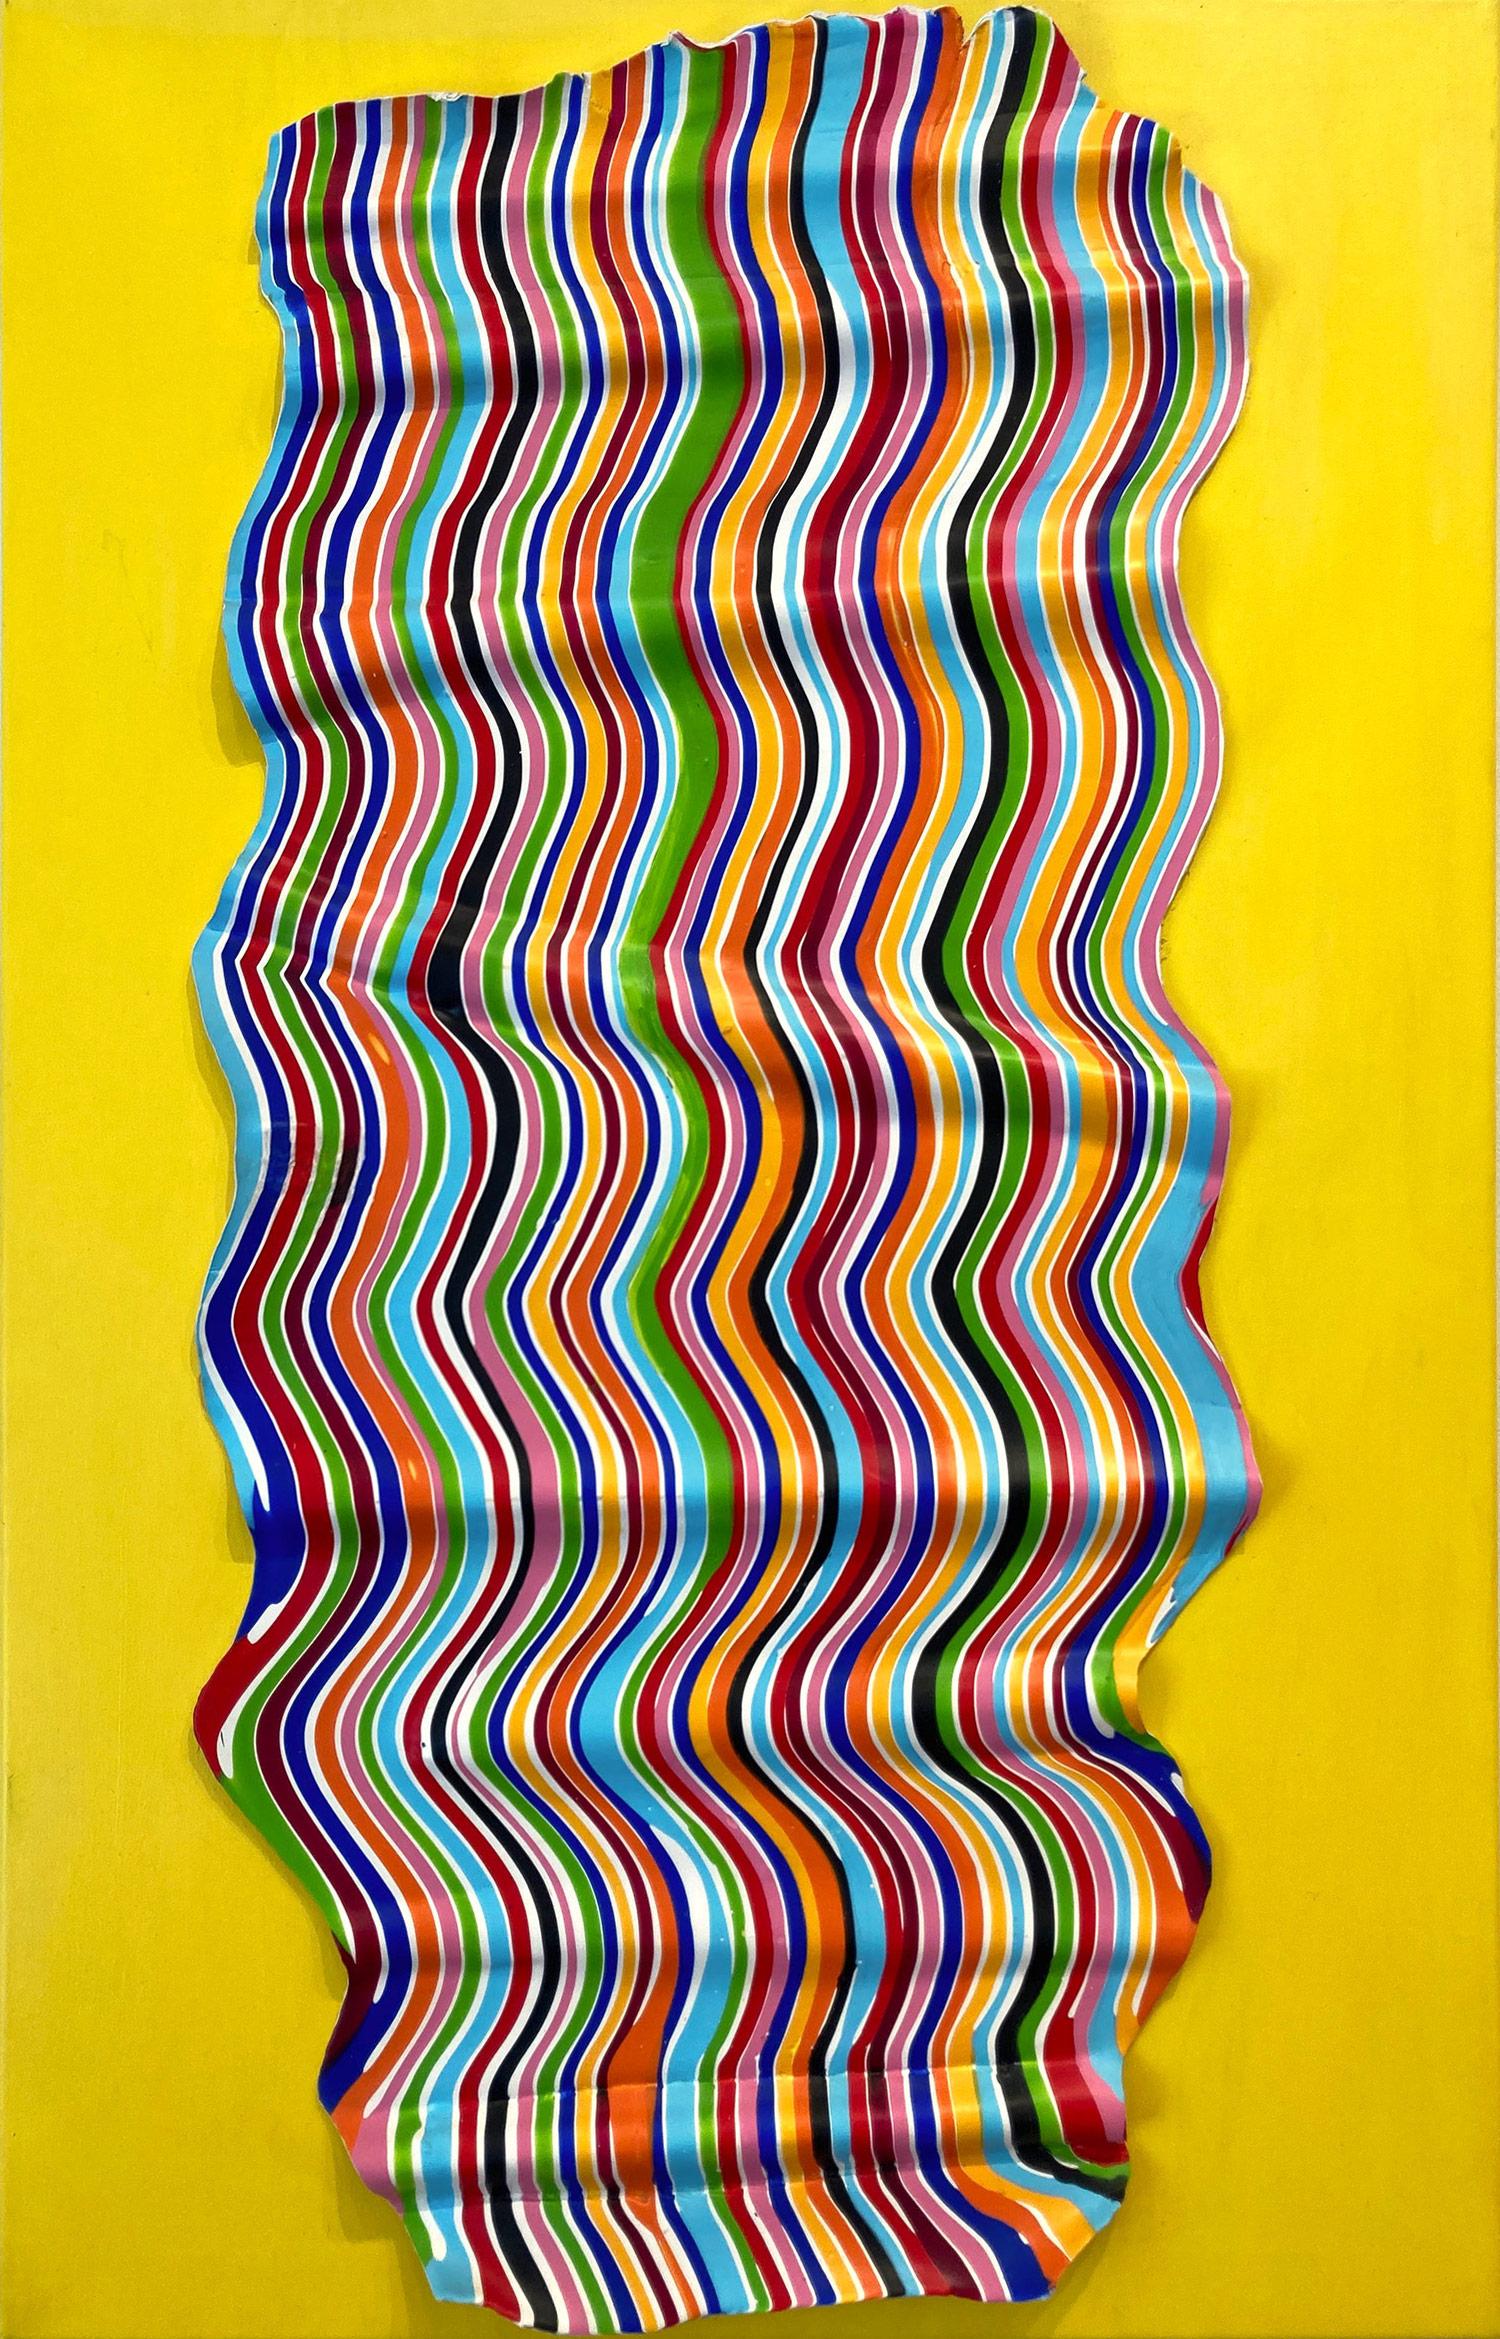 "Ryla" Peinture abstraite colorée et hypnotique en argile d'acrylique sur toile